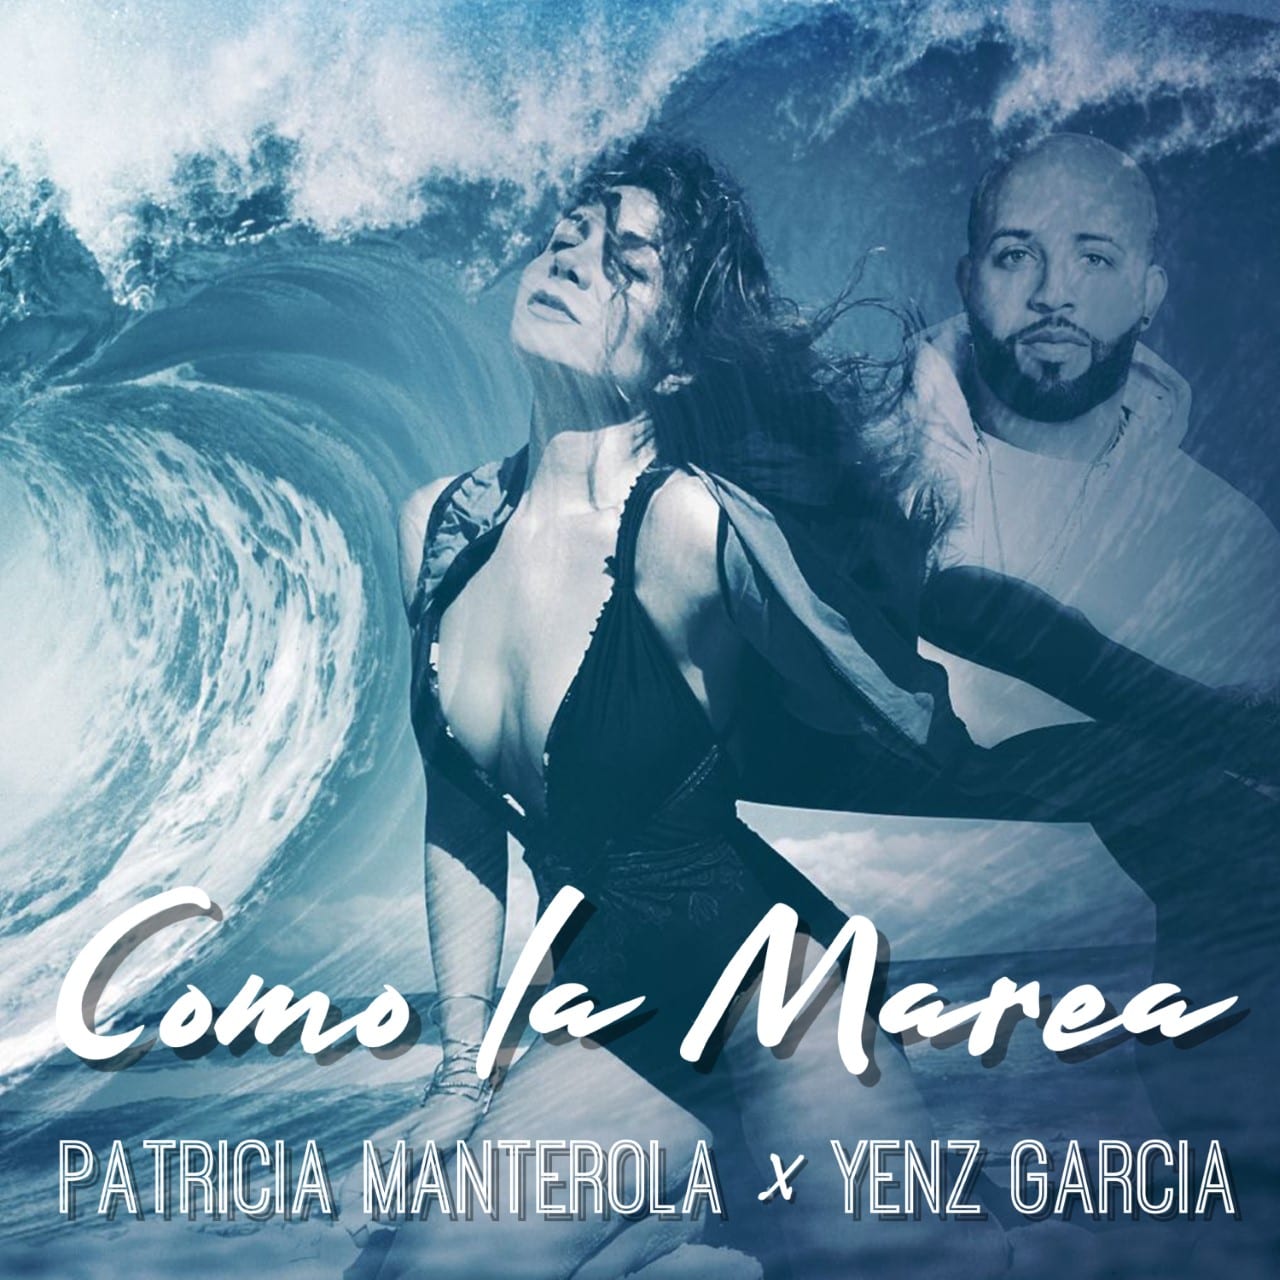 Patricia Manterola lanzó “Como la marea”, su nuevo sencillo